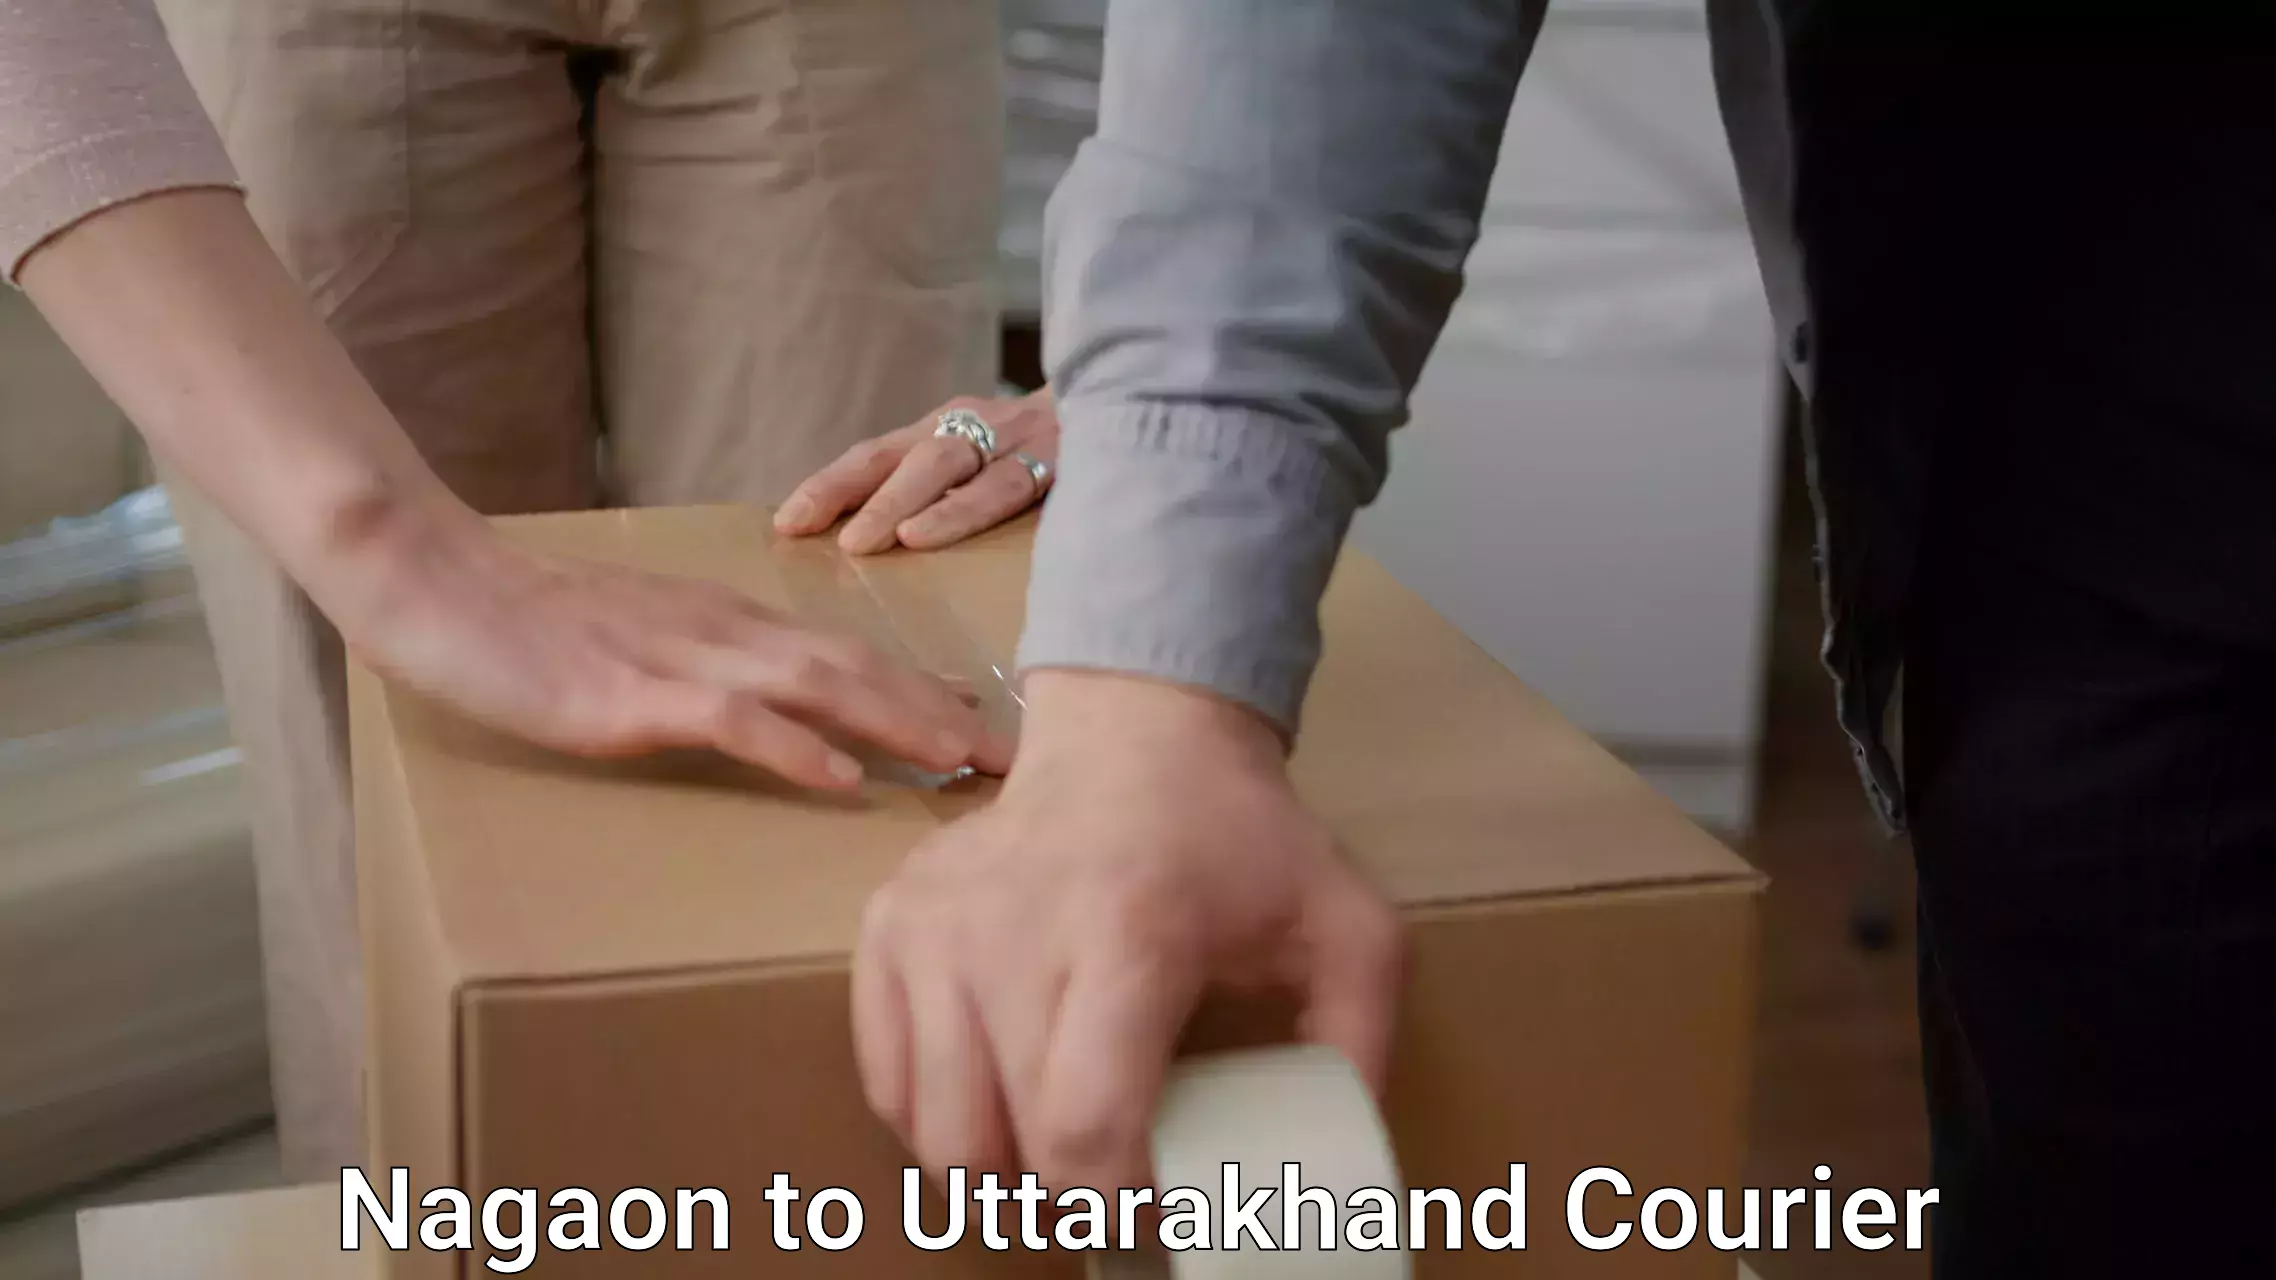 Efficient packing and moving Nagaon to Ramnagar